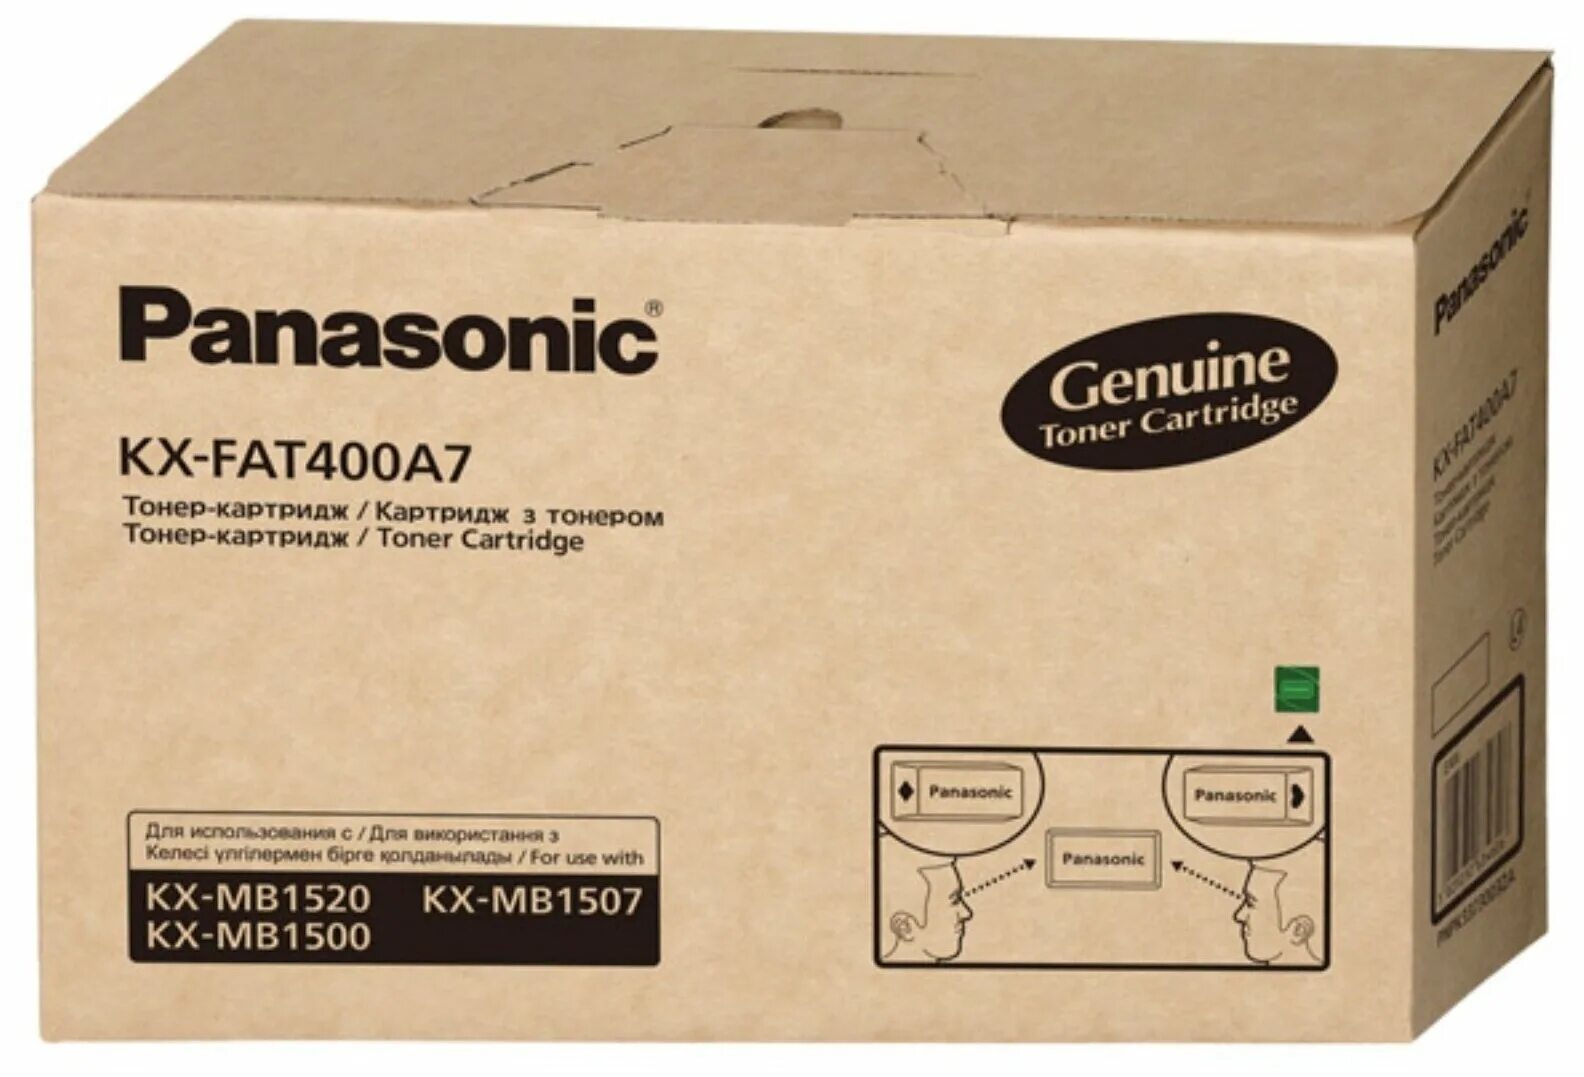 Картриджи для принтеров panasonic купить. Картридж Panasonic KX-fat400a7. Тонер Panasonic KX-fat400a. Тонер-картридж Panasonic KX-mb1500, 1520 (1800 стр.) KX-fat400a. Panasonic KX-mb1500 картридж.